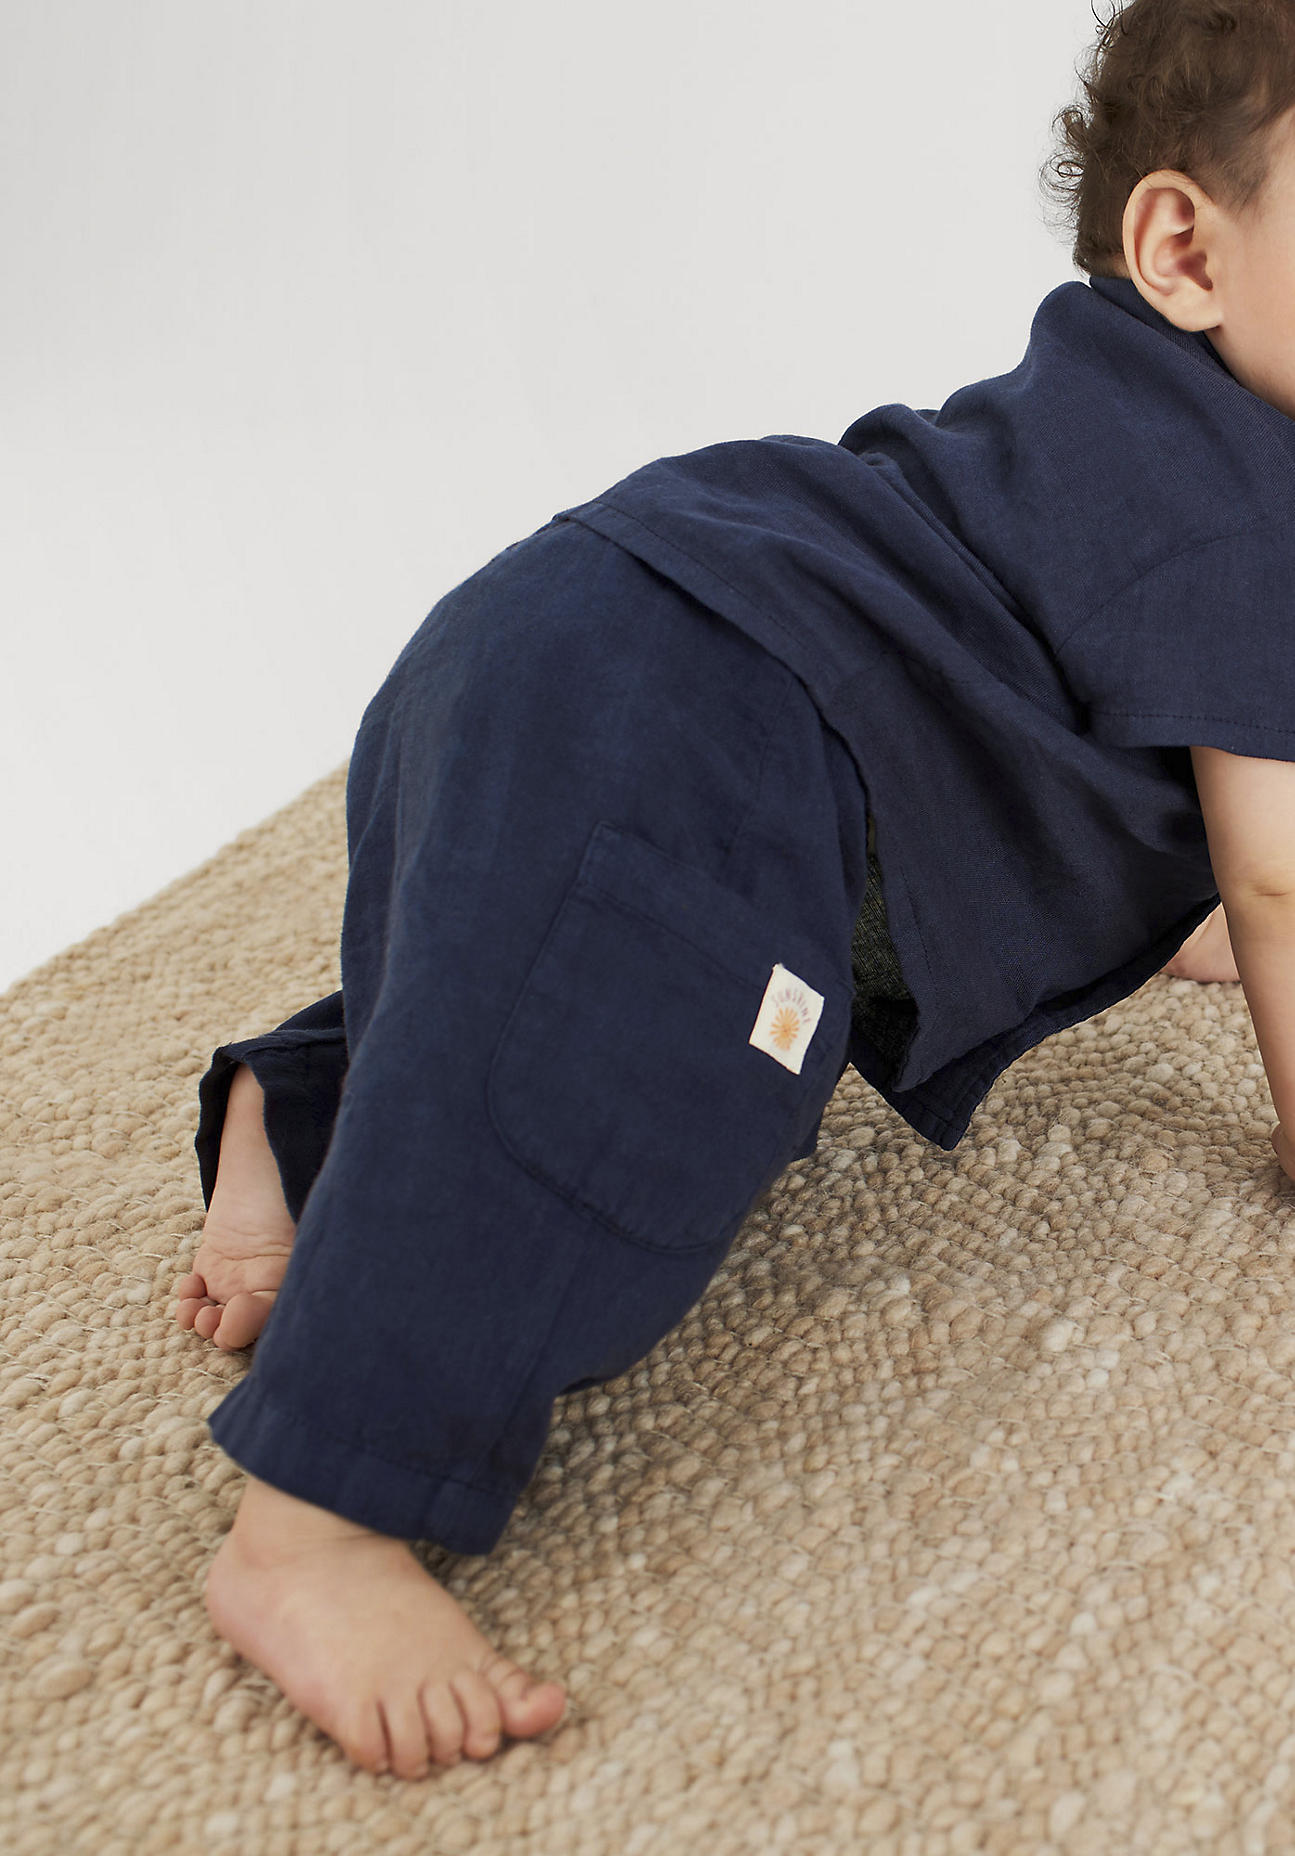 hessnatur Baby Hose Relaxed aus Leinen mit Bio-Baumwolle - blau - Größe 98/104